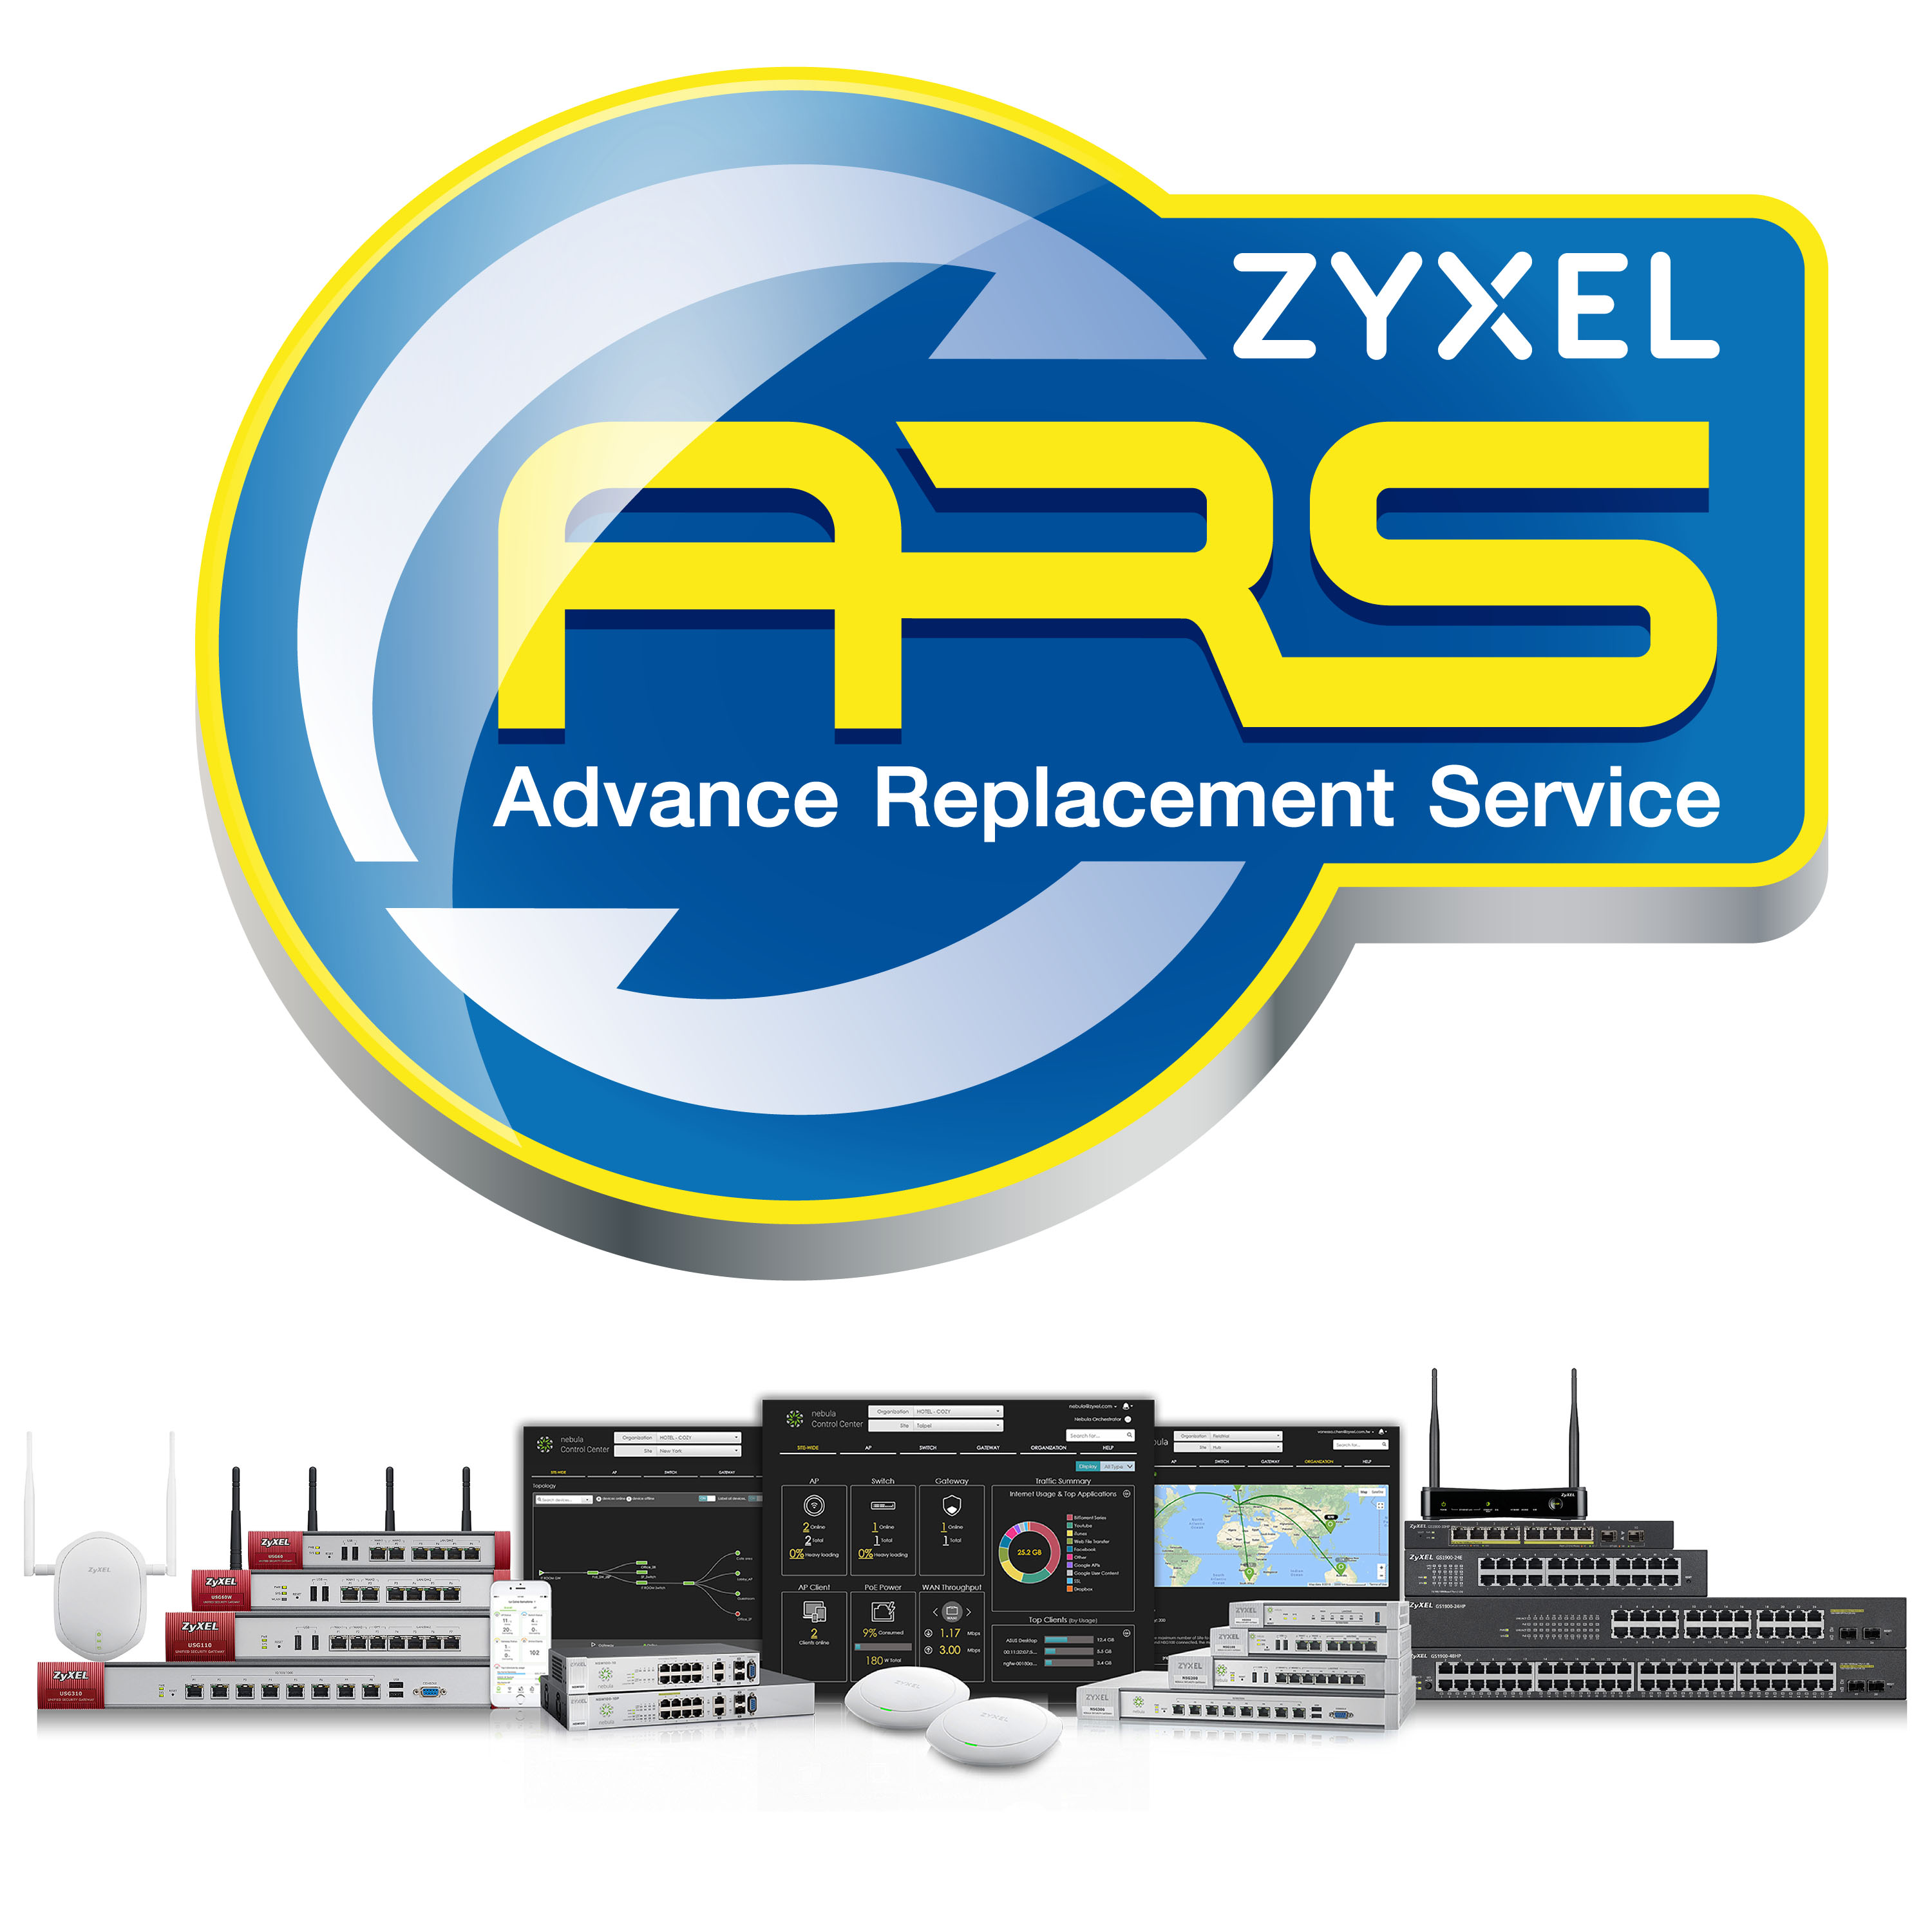 zyxel advance replacement ZYXEL“ไซเซลรุกตลาดองค์กร ยกระดับการบริการ Advance Replacement ส่งสินค้าทดแทนเร็วกว่าเดิม เป็น Next Business Day” ส่งสินค้าทดแทนในวันรุ่งขึ้น เพิ่มความราบรื่นของธุรกิจ เพิ่มความพอใจในแบรนด์